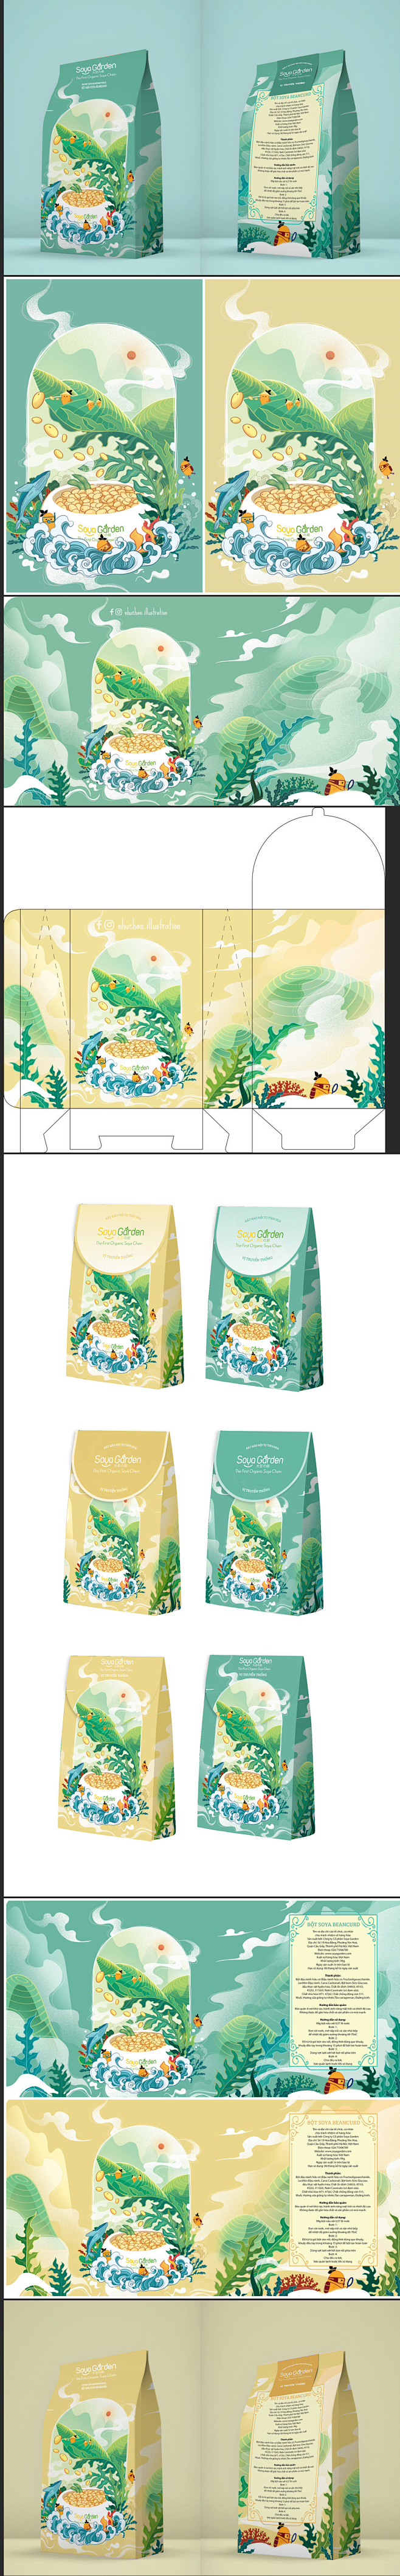 包装豆腐2020酱油插画风格包装设计[7...